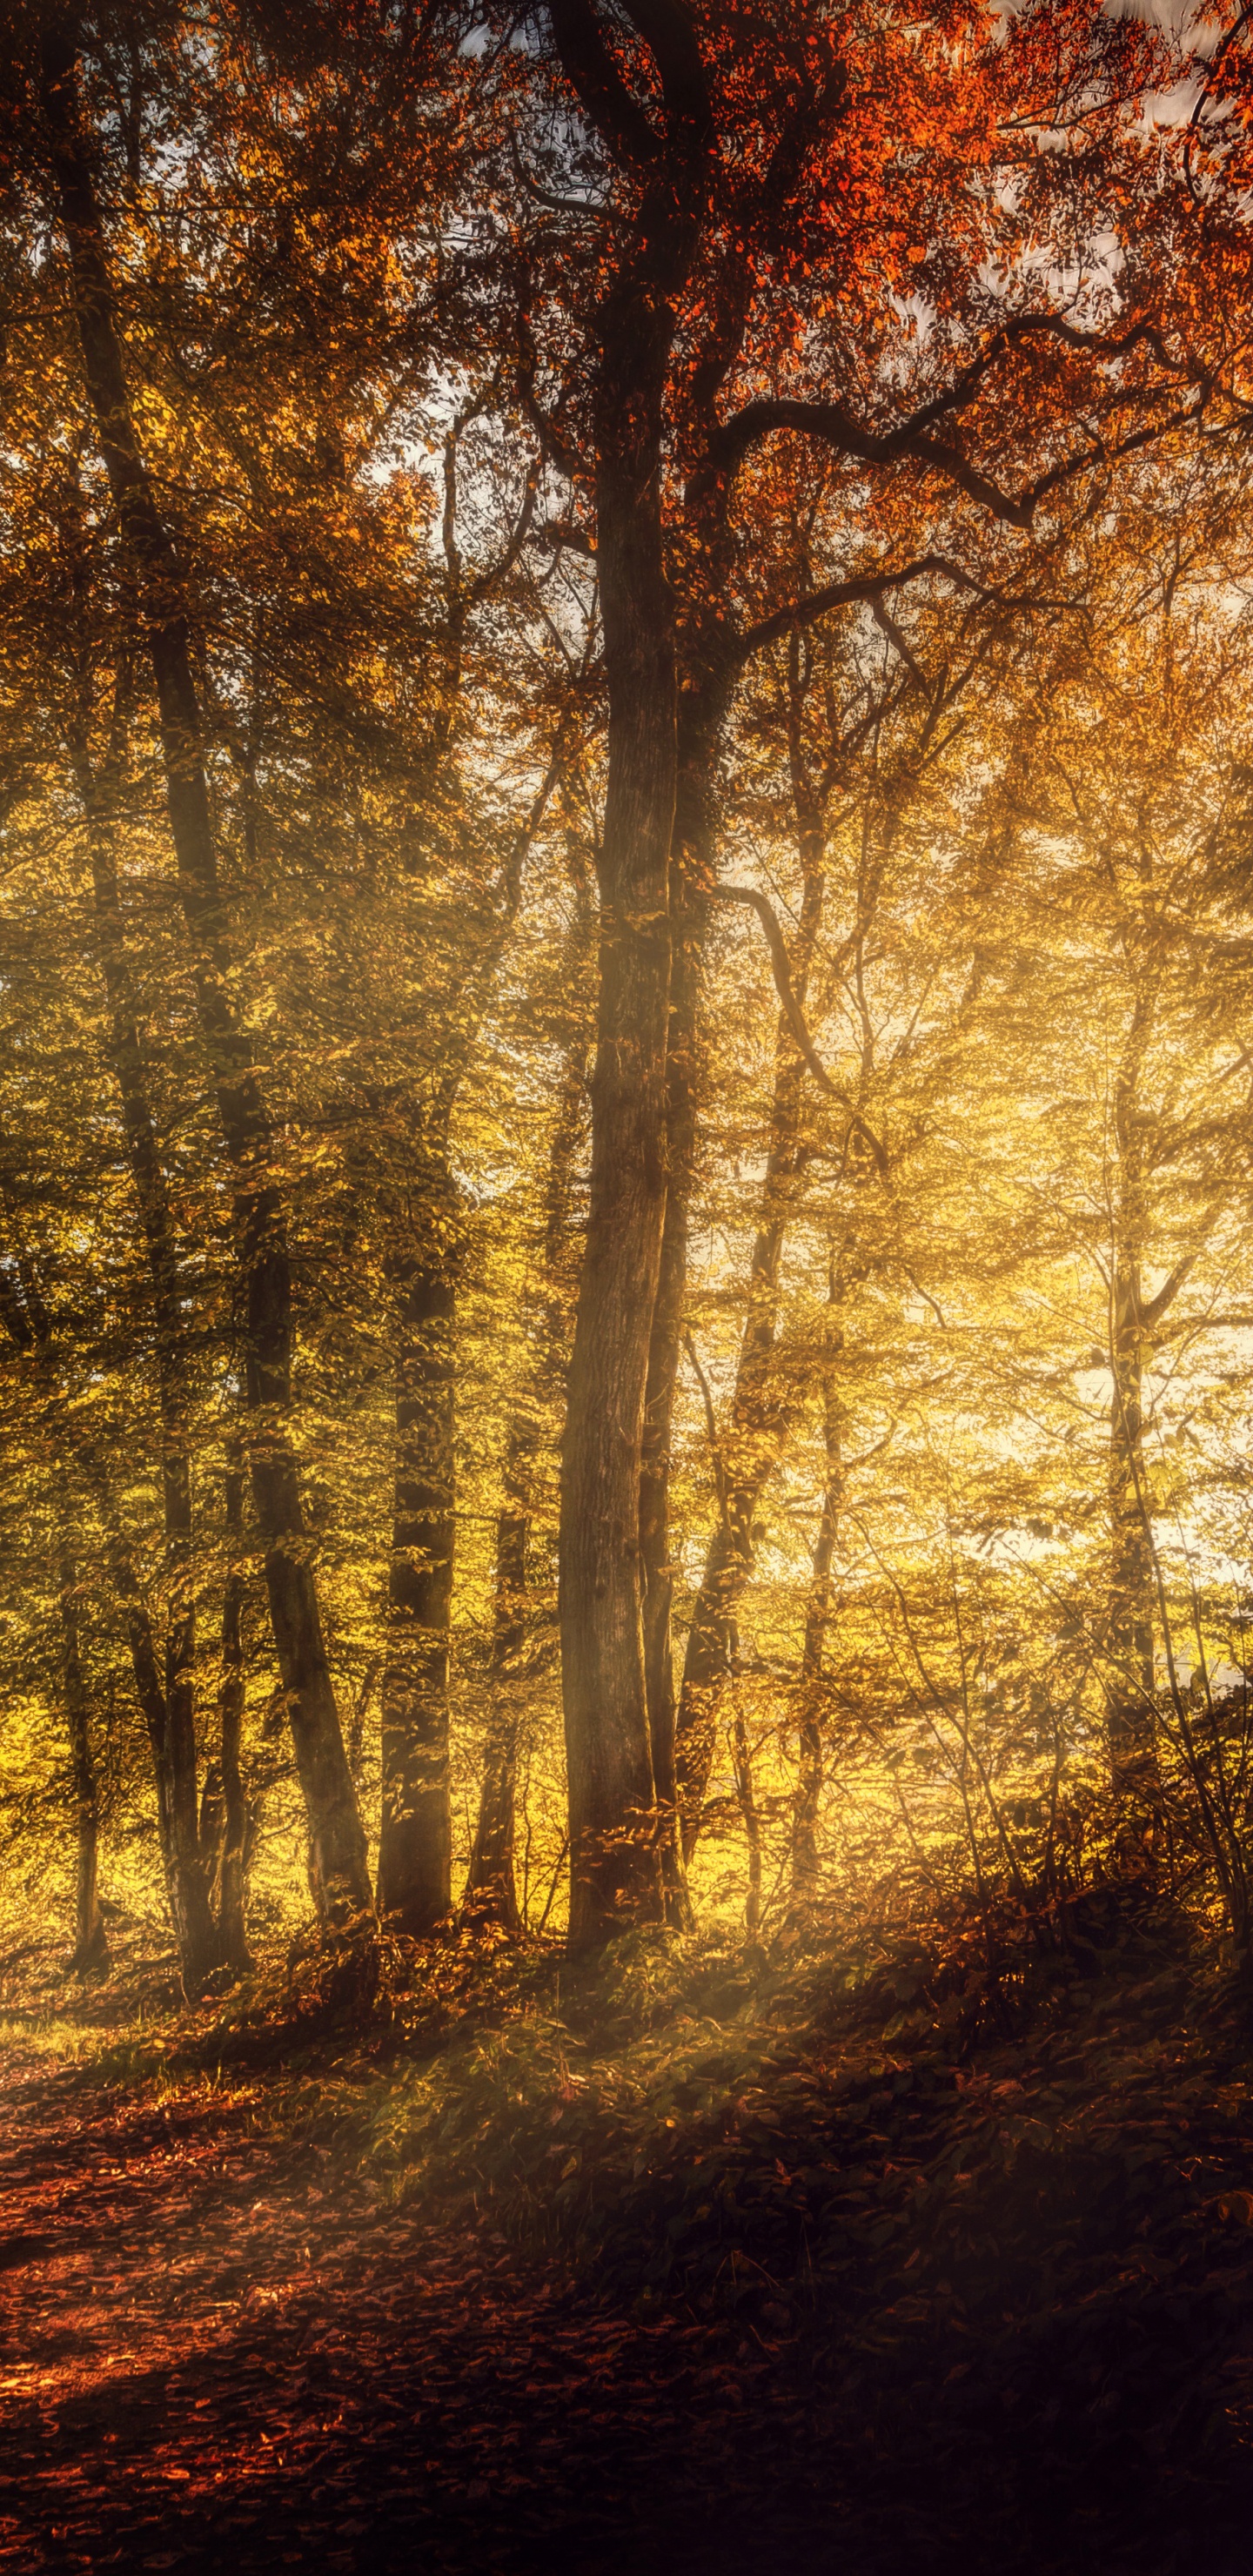 Braune Bäume im Wald Tagsüber. Wallpaper in 1440x2960 Resolution